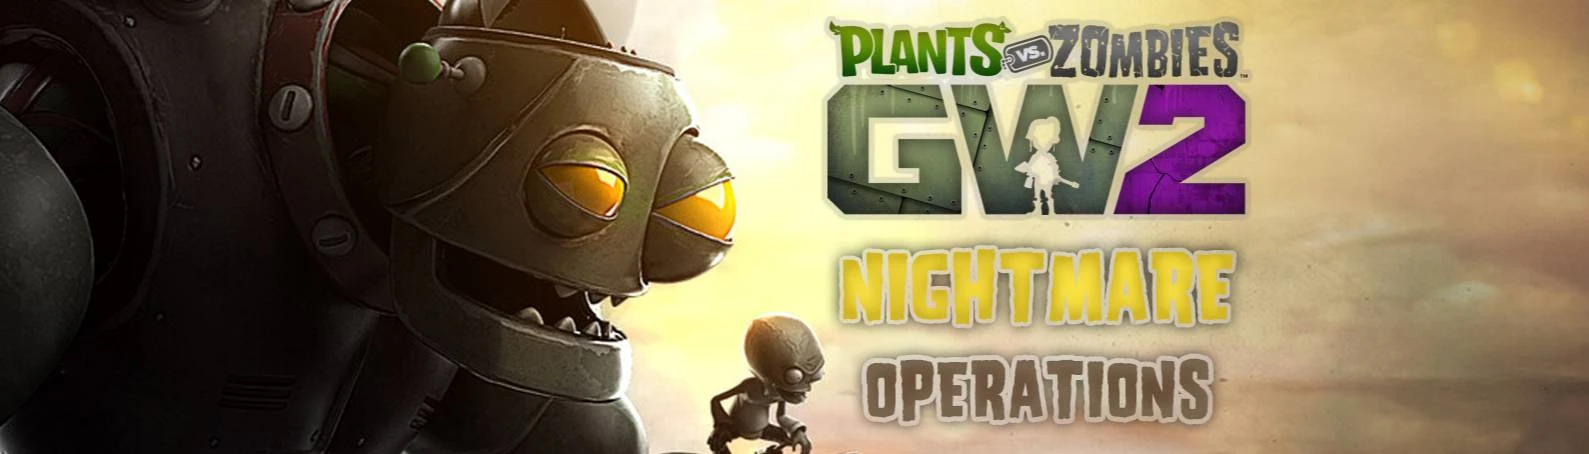 Top mods at Plants vs. Zombies: Garden Warfare 2 Nexus - Mods and